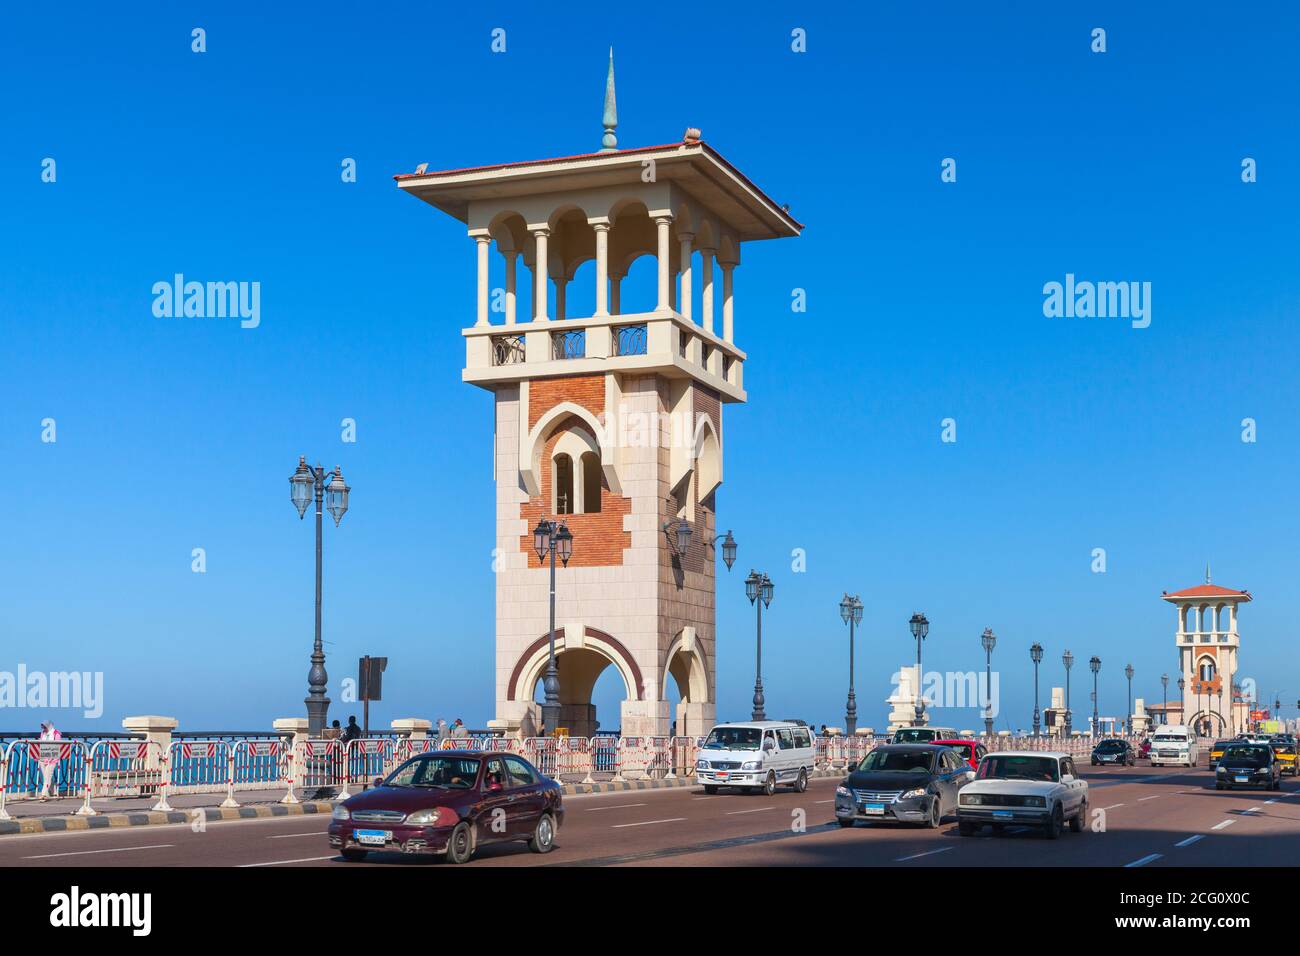 Alejandría, Egipto - 14 de diciembre de 2018: Vista del puente Stanley con coches y gente que camina, es un punto de referencia popular de Alejandría, Egipto Foto de stock